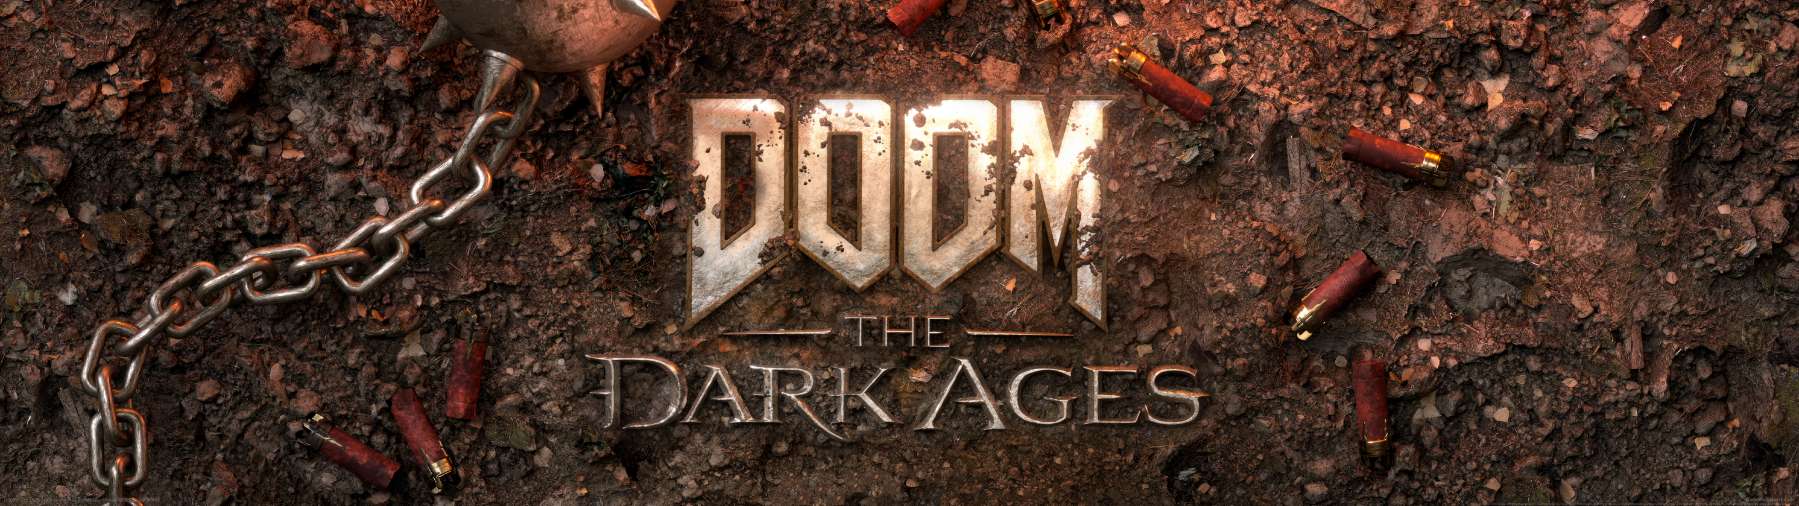 Doom: The Dark Ages fond d'cran